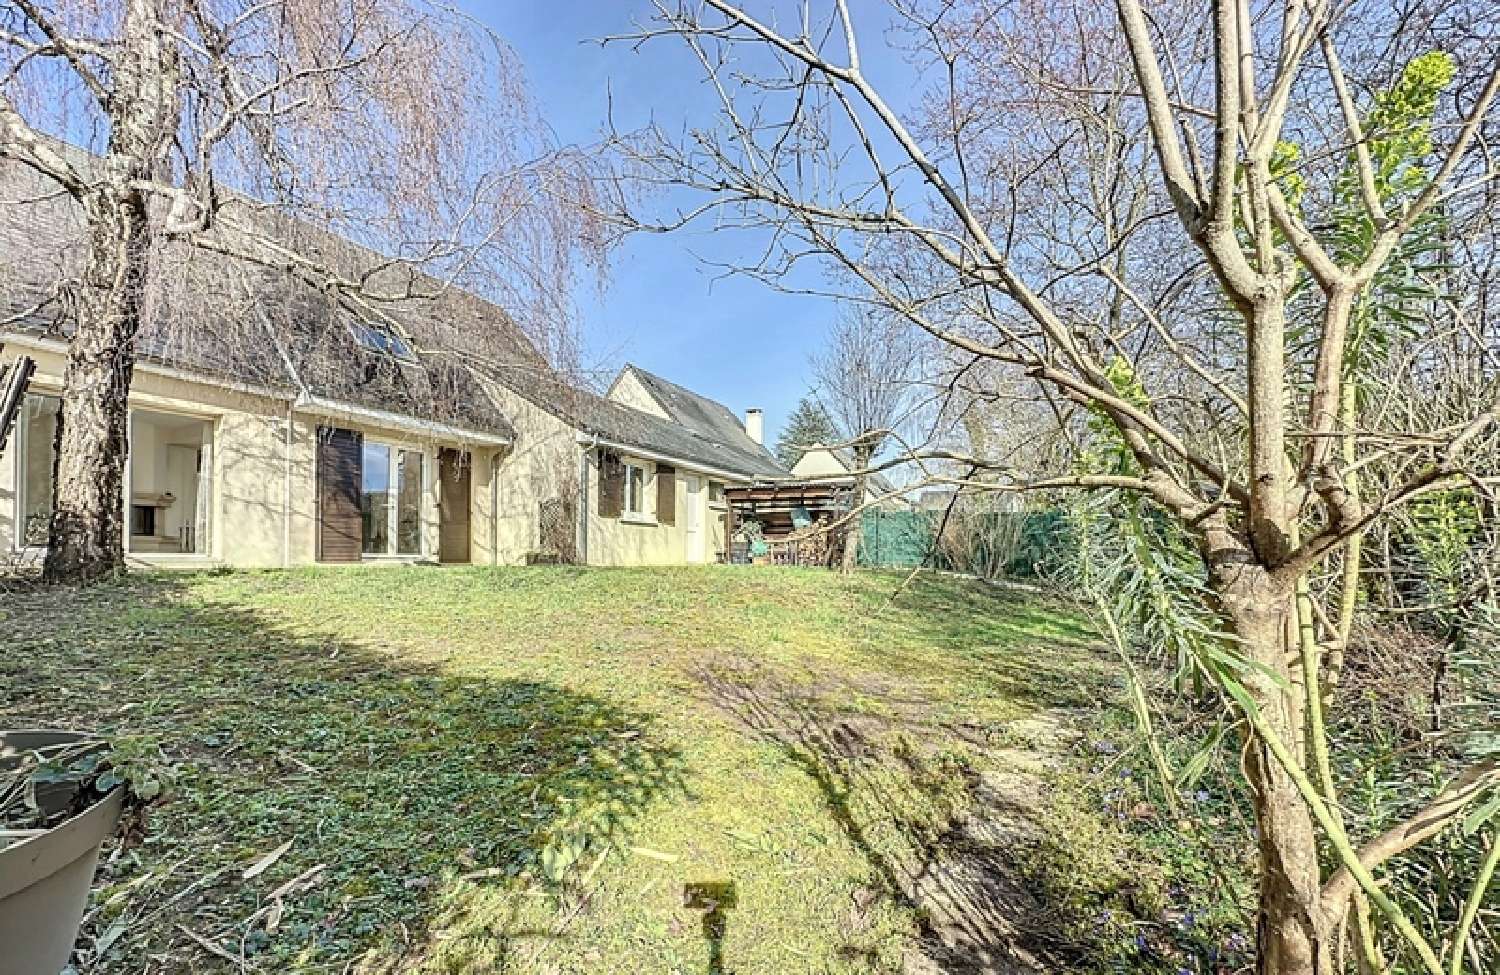  à vendre maison Fondettes Indre-et-Loire 8